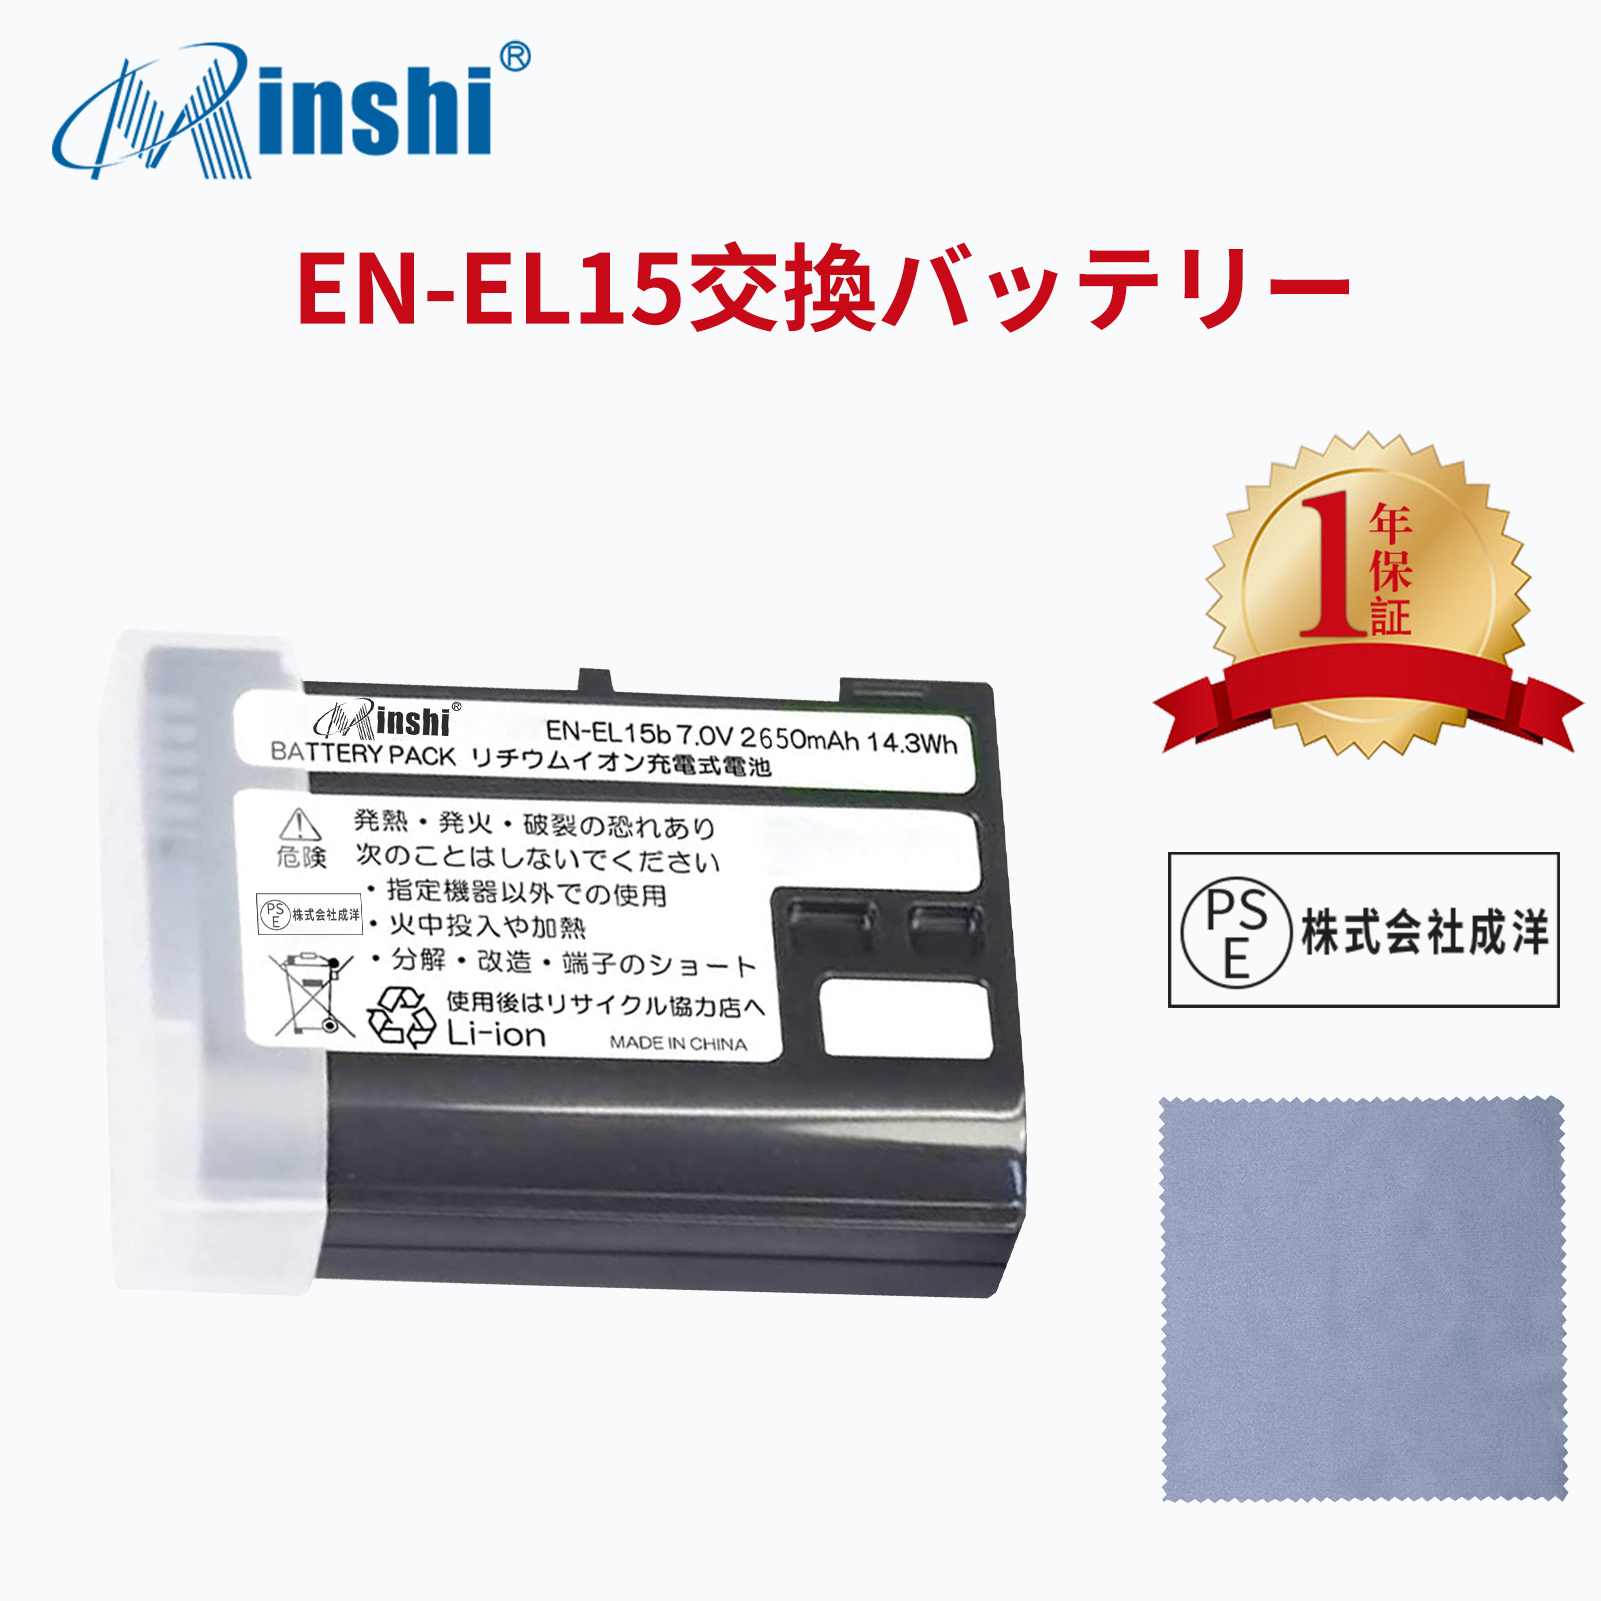 【清潔布ー付】minshi Nikon MB-D18 EN-EL15 EN-EL15C 【2650mAh 7.0V 】 Z6 Z7 D750 PSE認定済 高品質交換用バッテリー